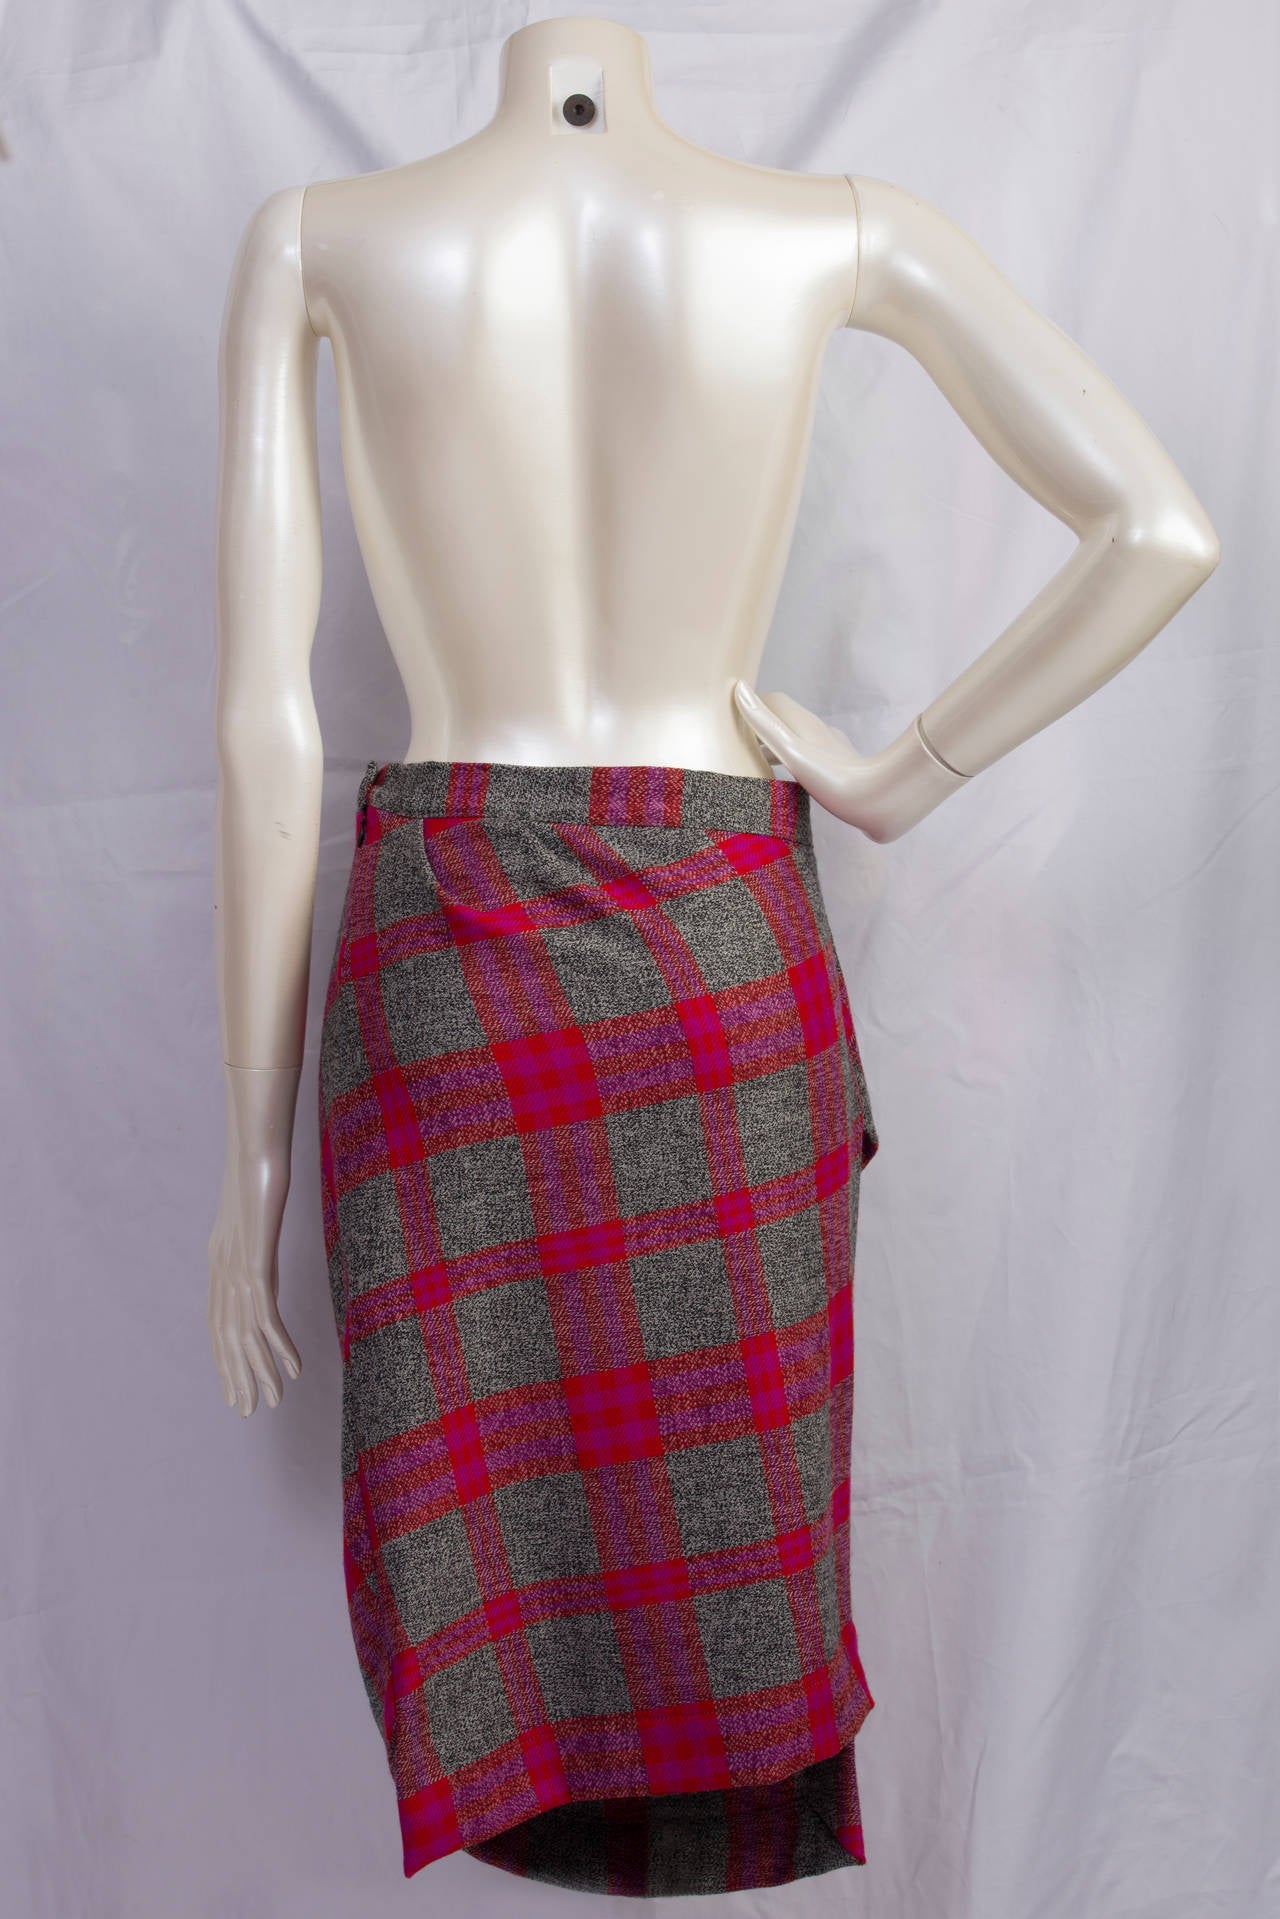 2000s Vivienne Westwood muliticolour asymmetric skirt